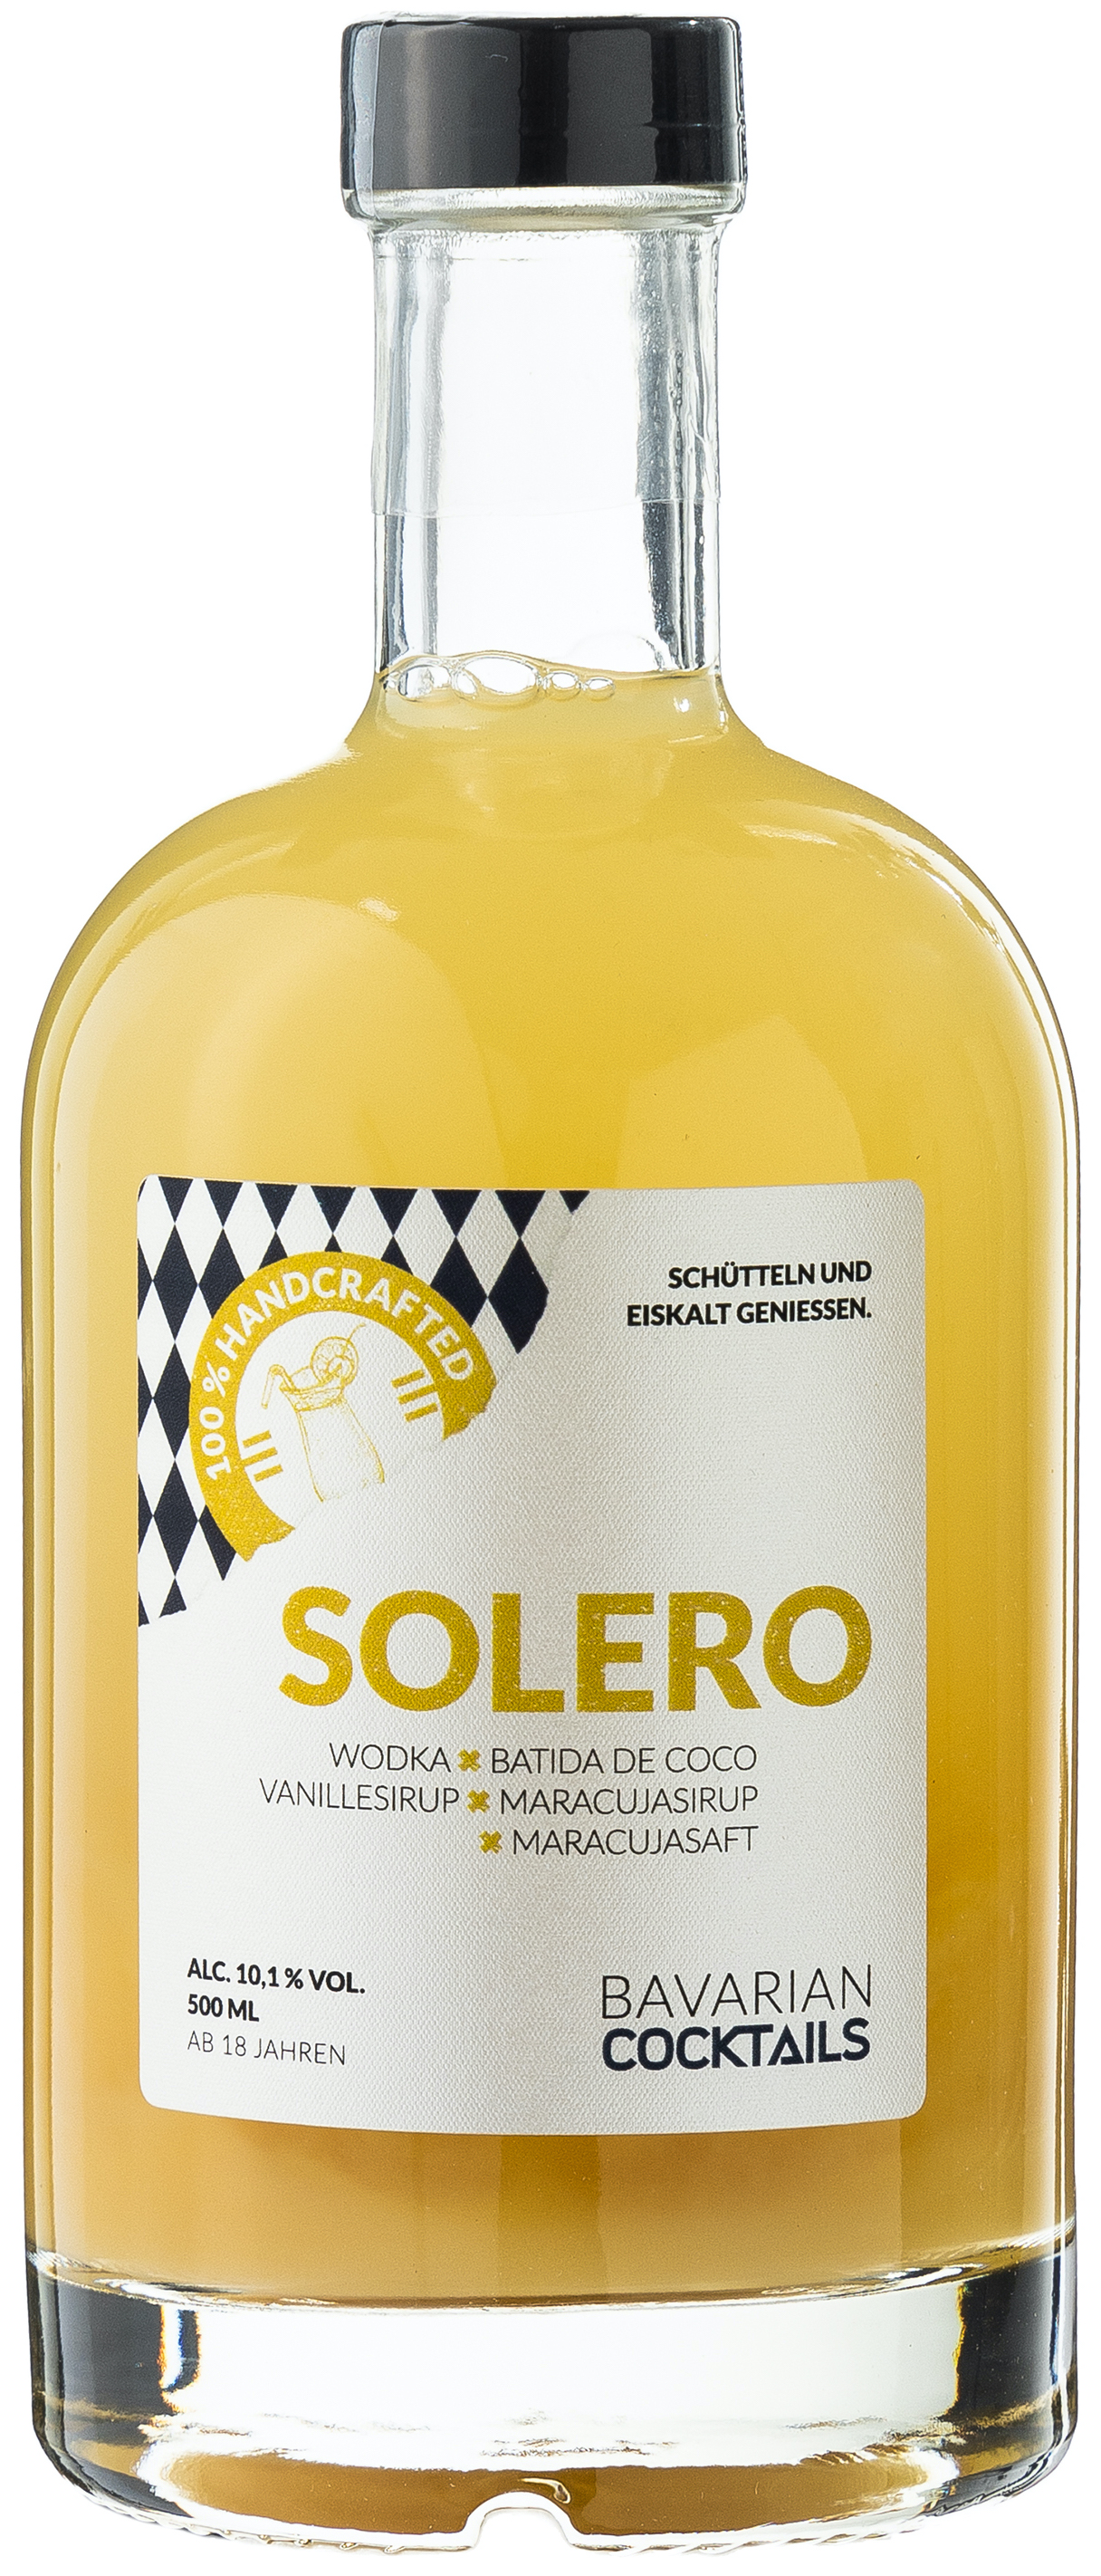 Bavarian Cocktails Solero 10,1% vol. 0,5L